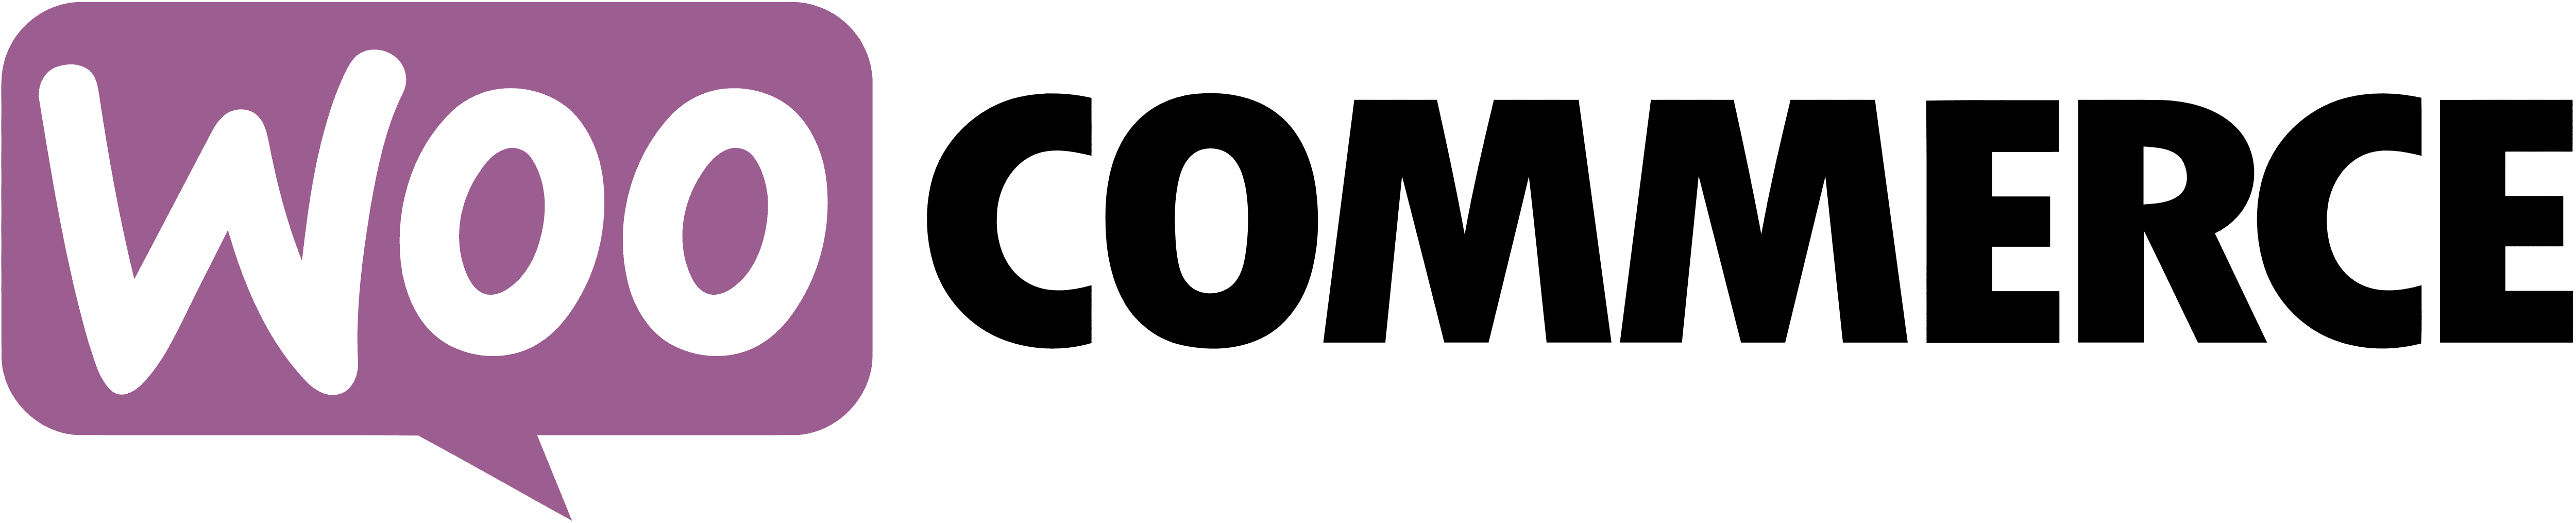 WooCommerce_logo_Woo_Commerce